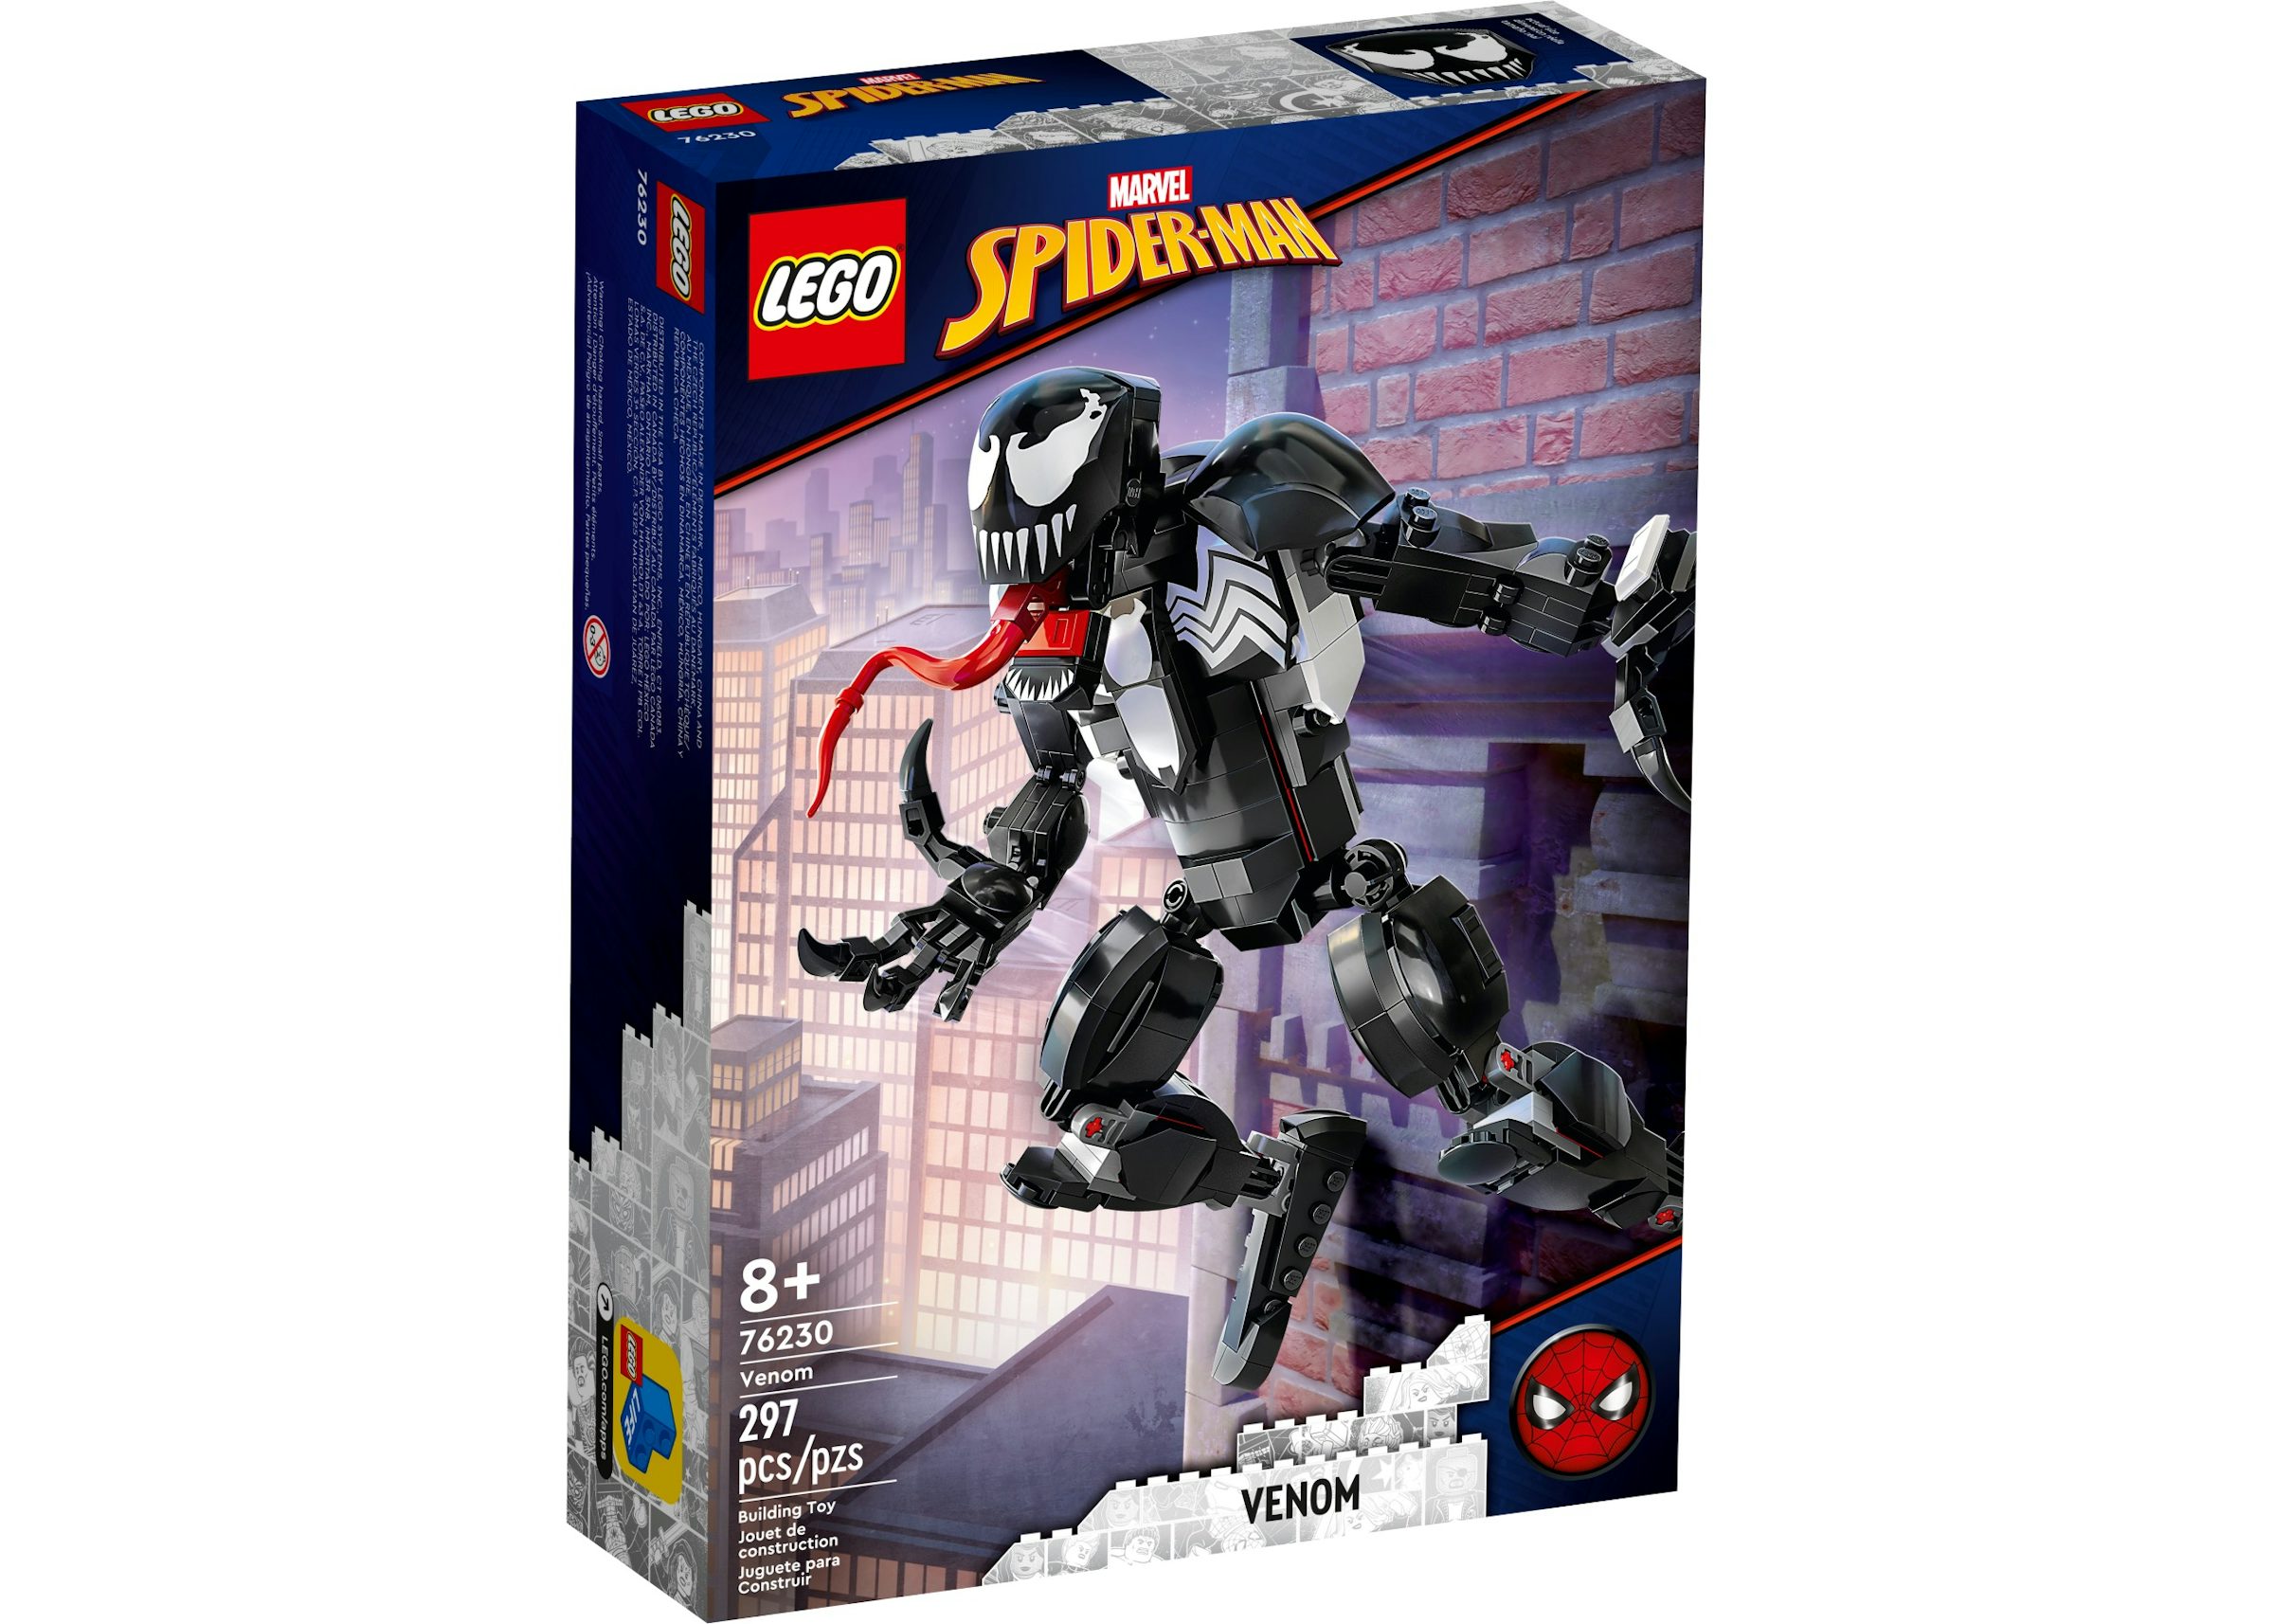 LEGO Marvel Spider-Man Venom Set 76230 - US